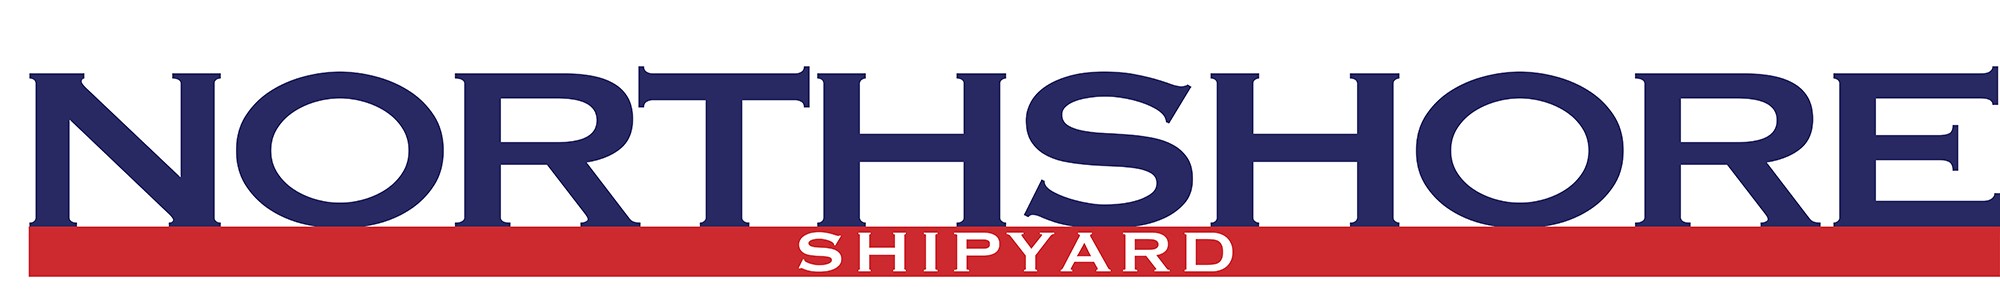 Northshore Shipyard beneficiary 